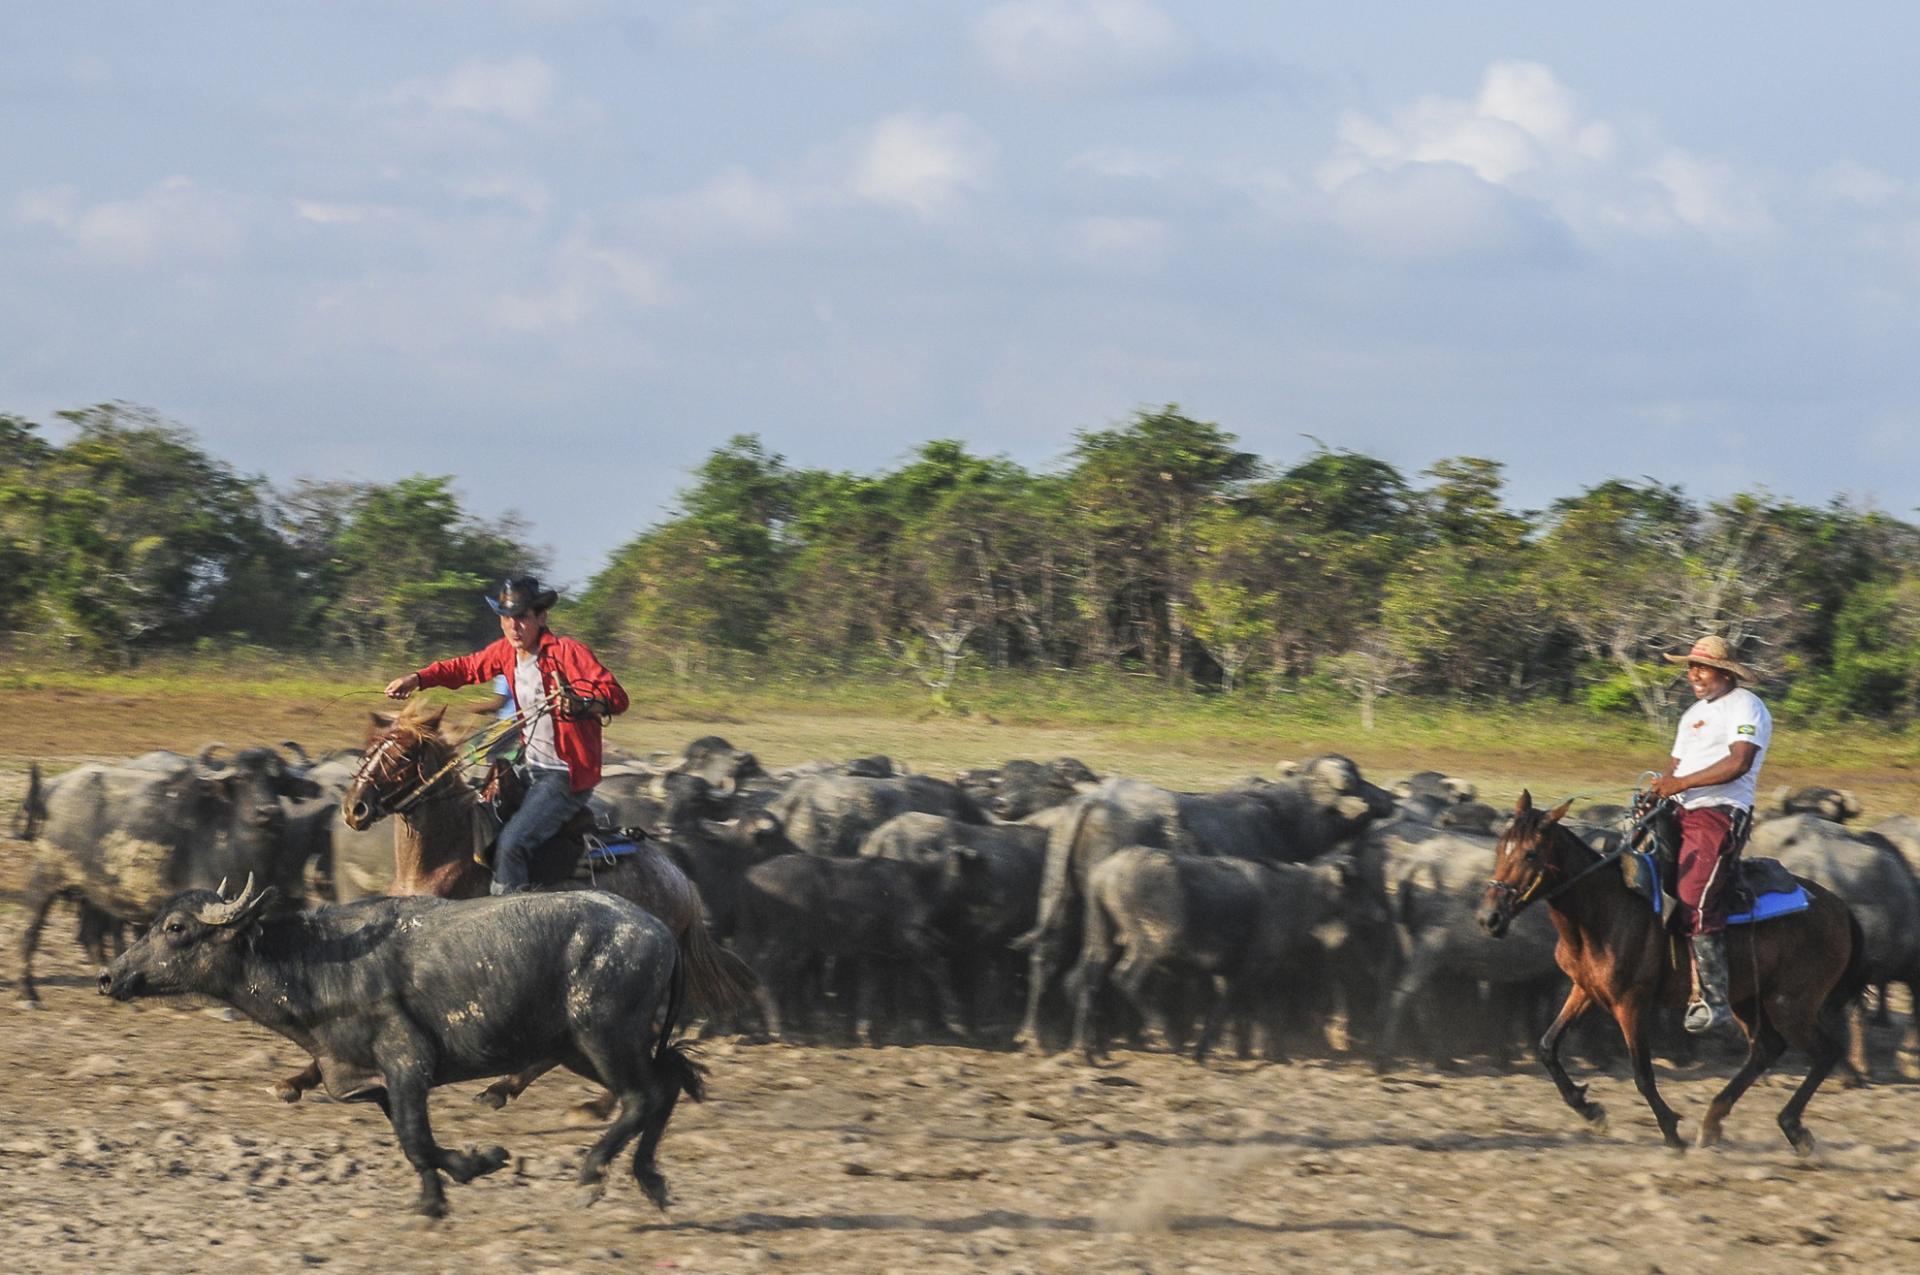 Reiter und Kühe in der einzigartigen Landschaft der Ilha do Marajo